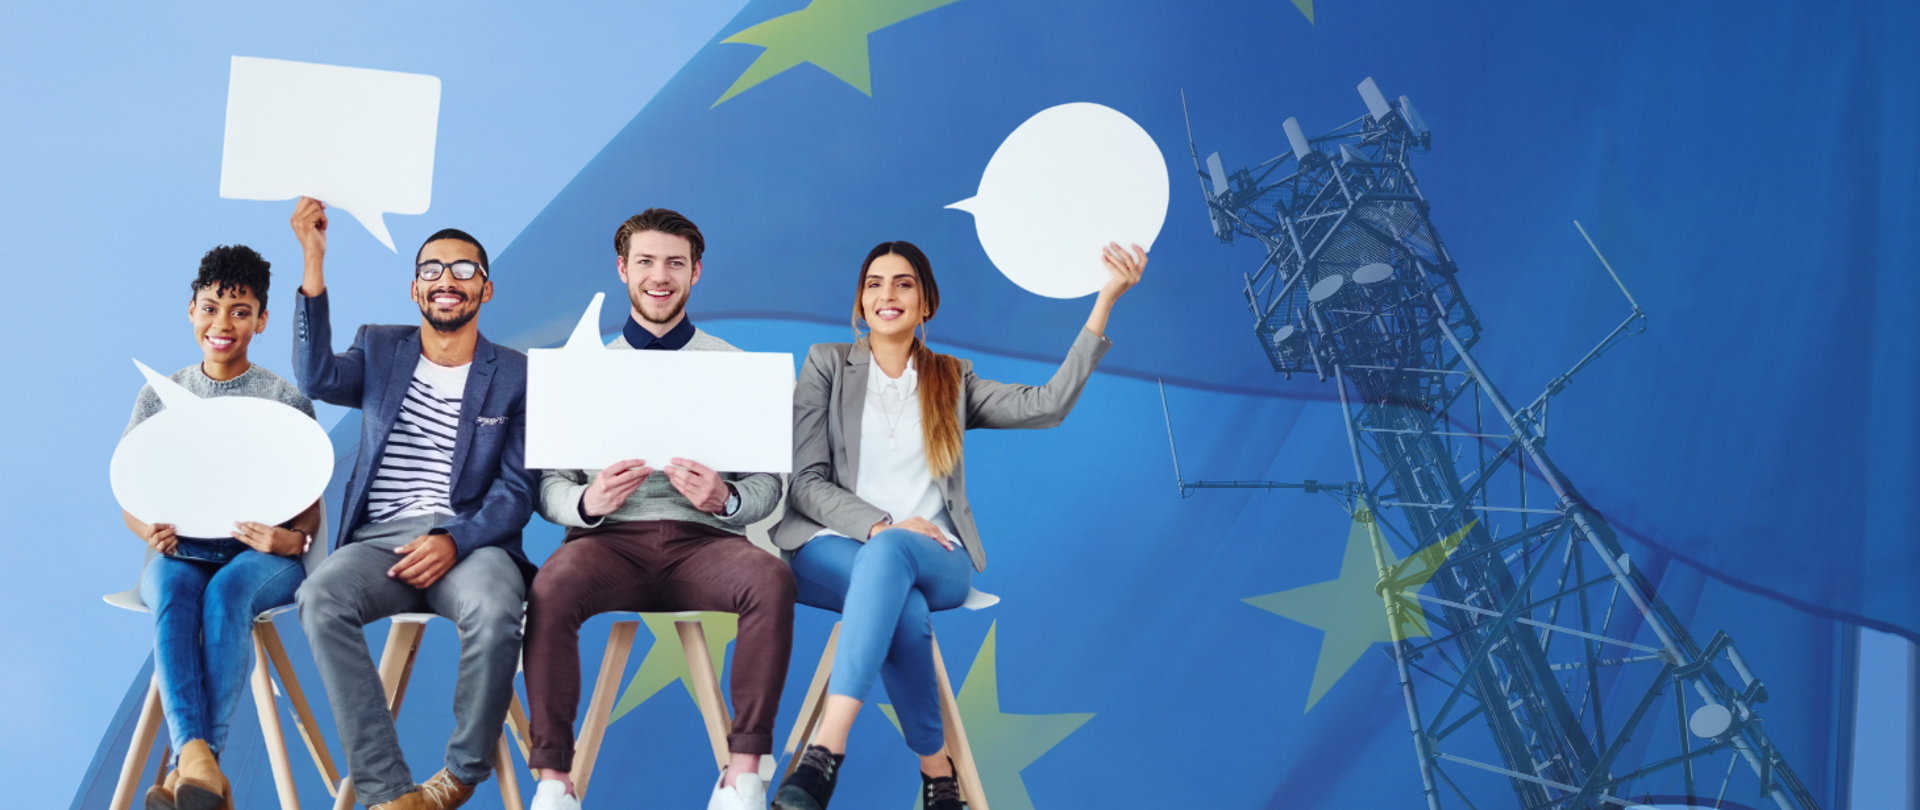 Grafika przedstawia czwórkę uśmiechniętych ludzi siedzących koło siebie na krzesłach. W rękach trzymają wycięte z papieru komiksowe dymki. W tle flaga Unii Europejskiej i zdjęcie masztu telekomunikacyjnego.